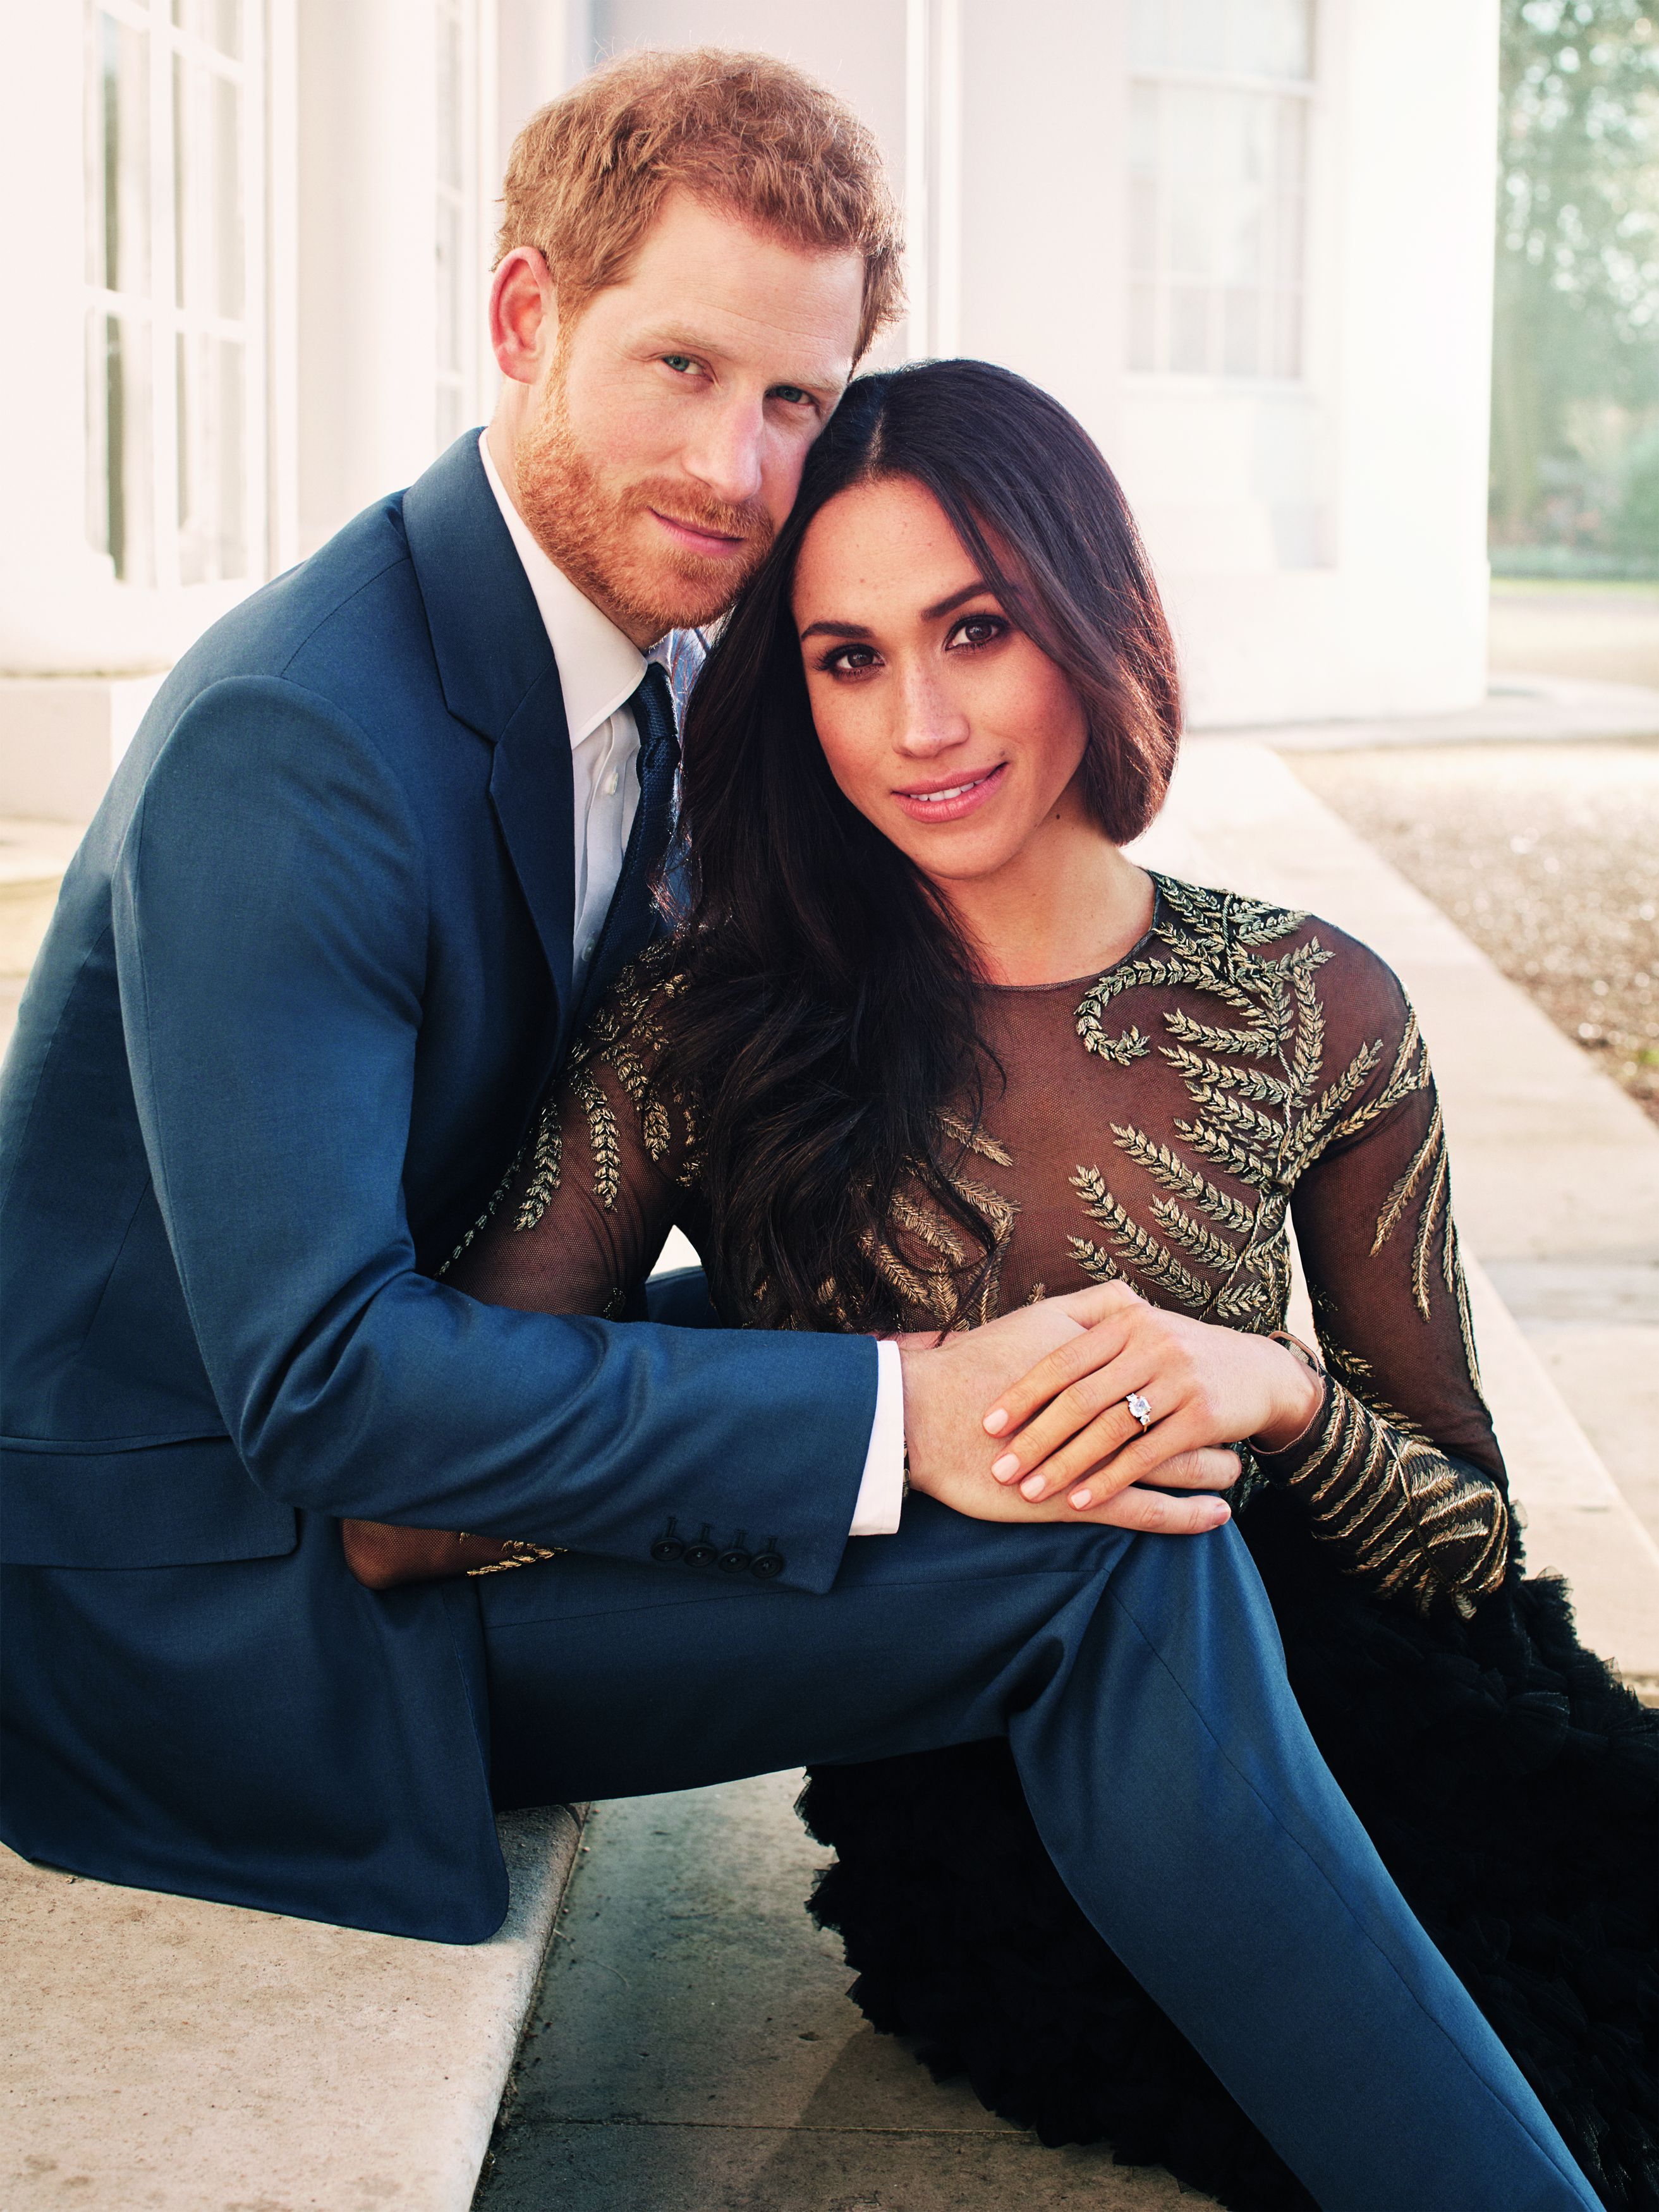 Das offizielle Verlobungsfoto von Prinz Harry und Meghan Markle, November 2017. | Quelle: Getty Images